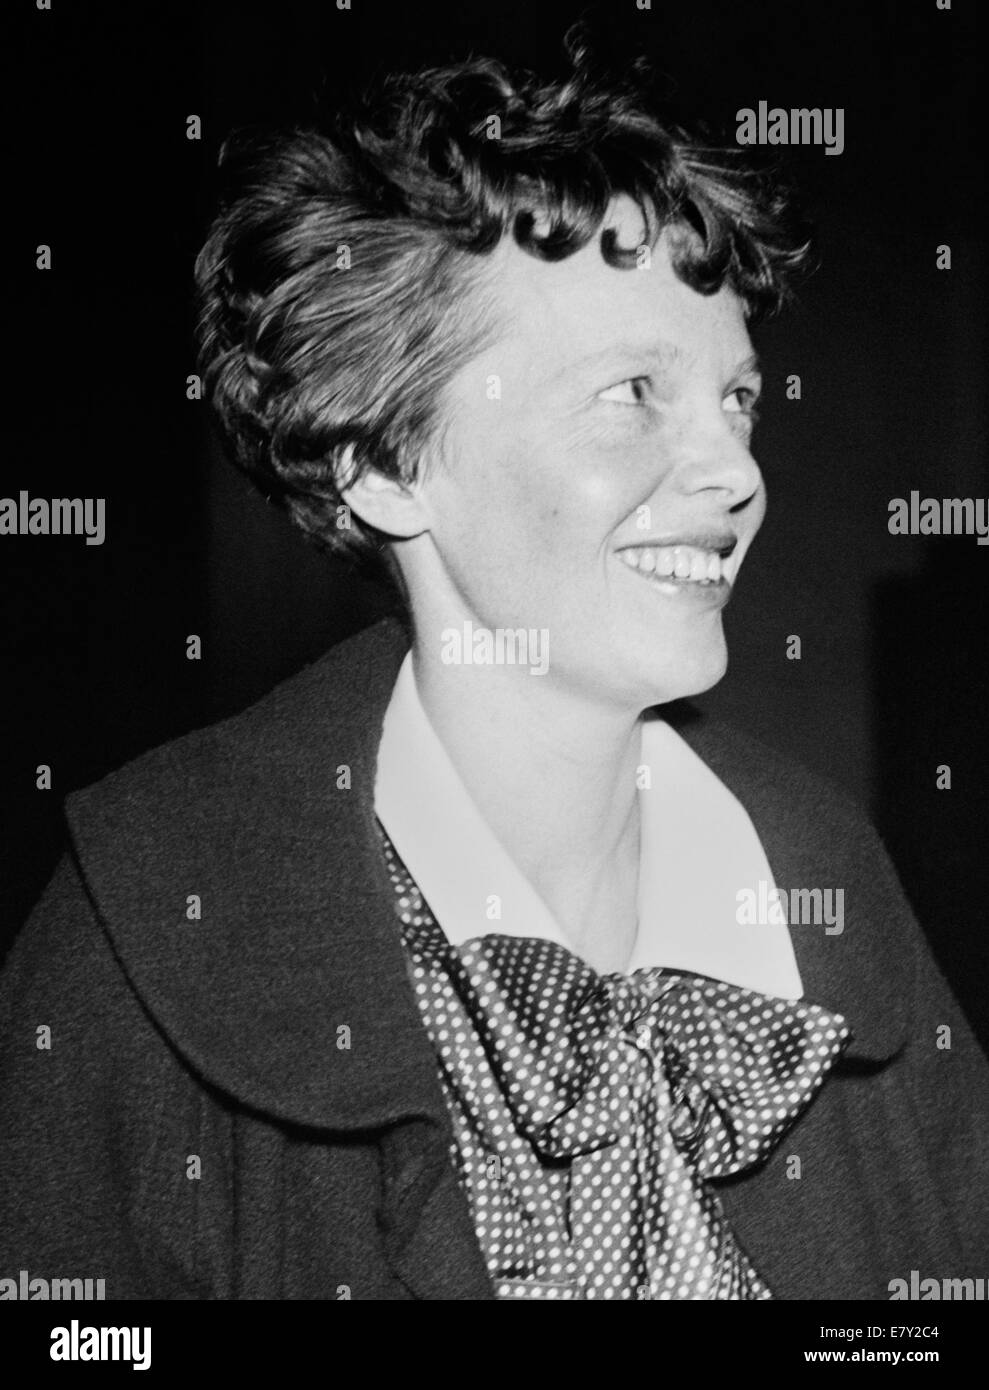 Foto d'epoca della pioniera e autrice dell'aviazione americana Amelia Earhart (1897 – dichiarata morta nel 1939) – Earthart e il suo navigatore Fred Noonan sono scomparsi nel 1937 mentre stava cercando di diventare la prima donna a completare un volo circumnavigazionale del globo. Foto scattata nel 1936. Foto Stock